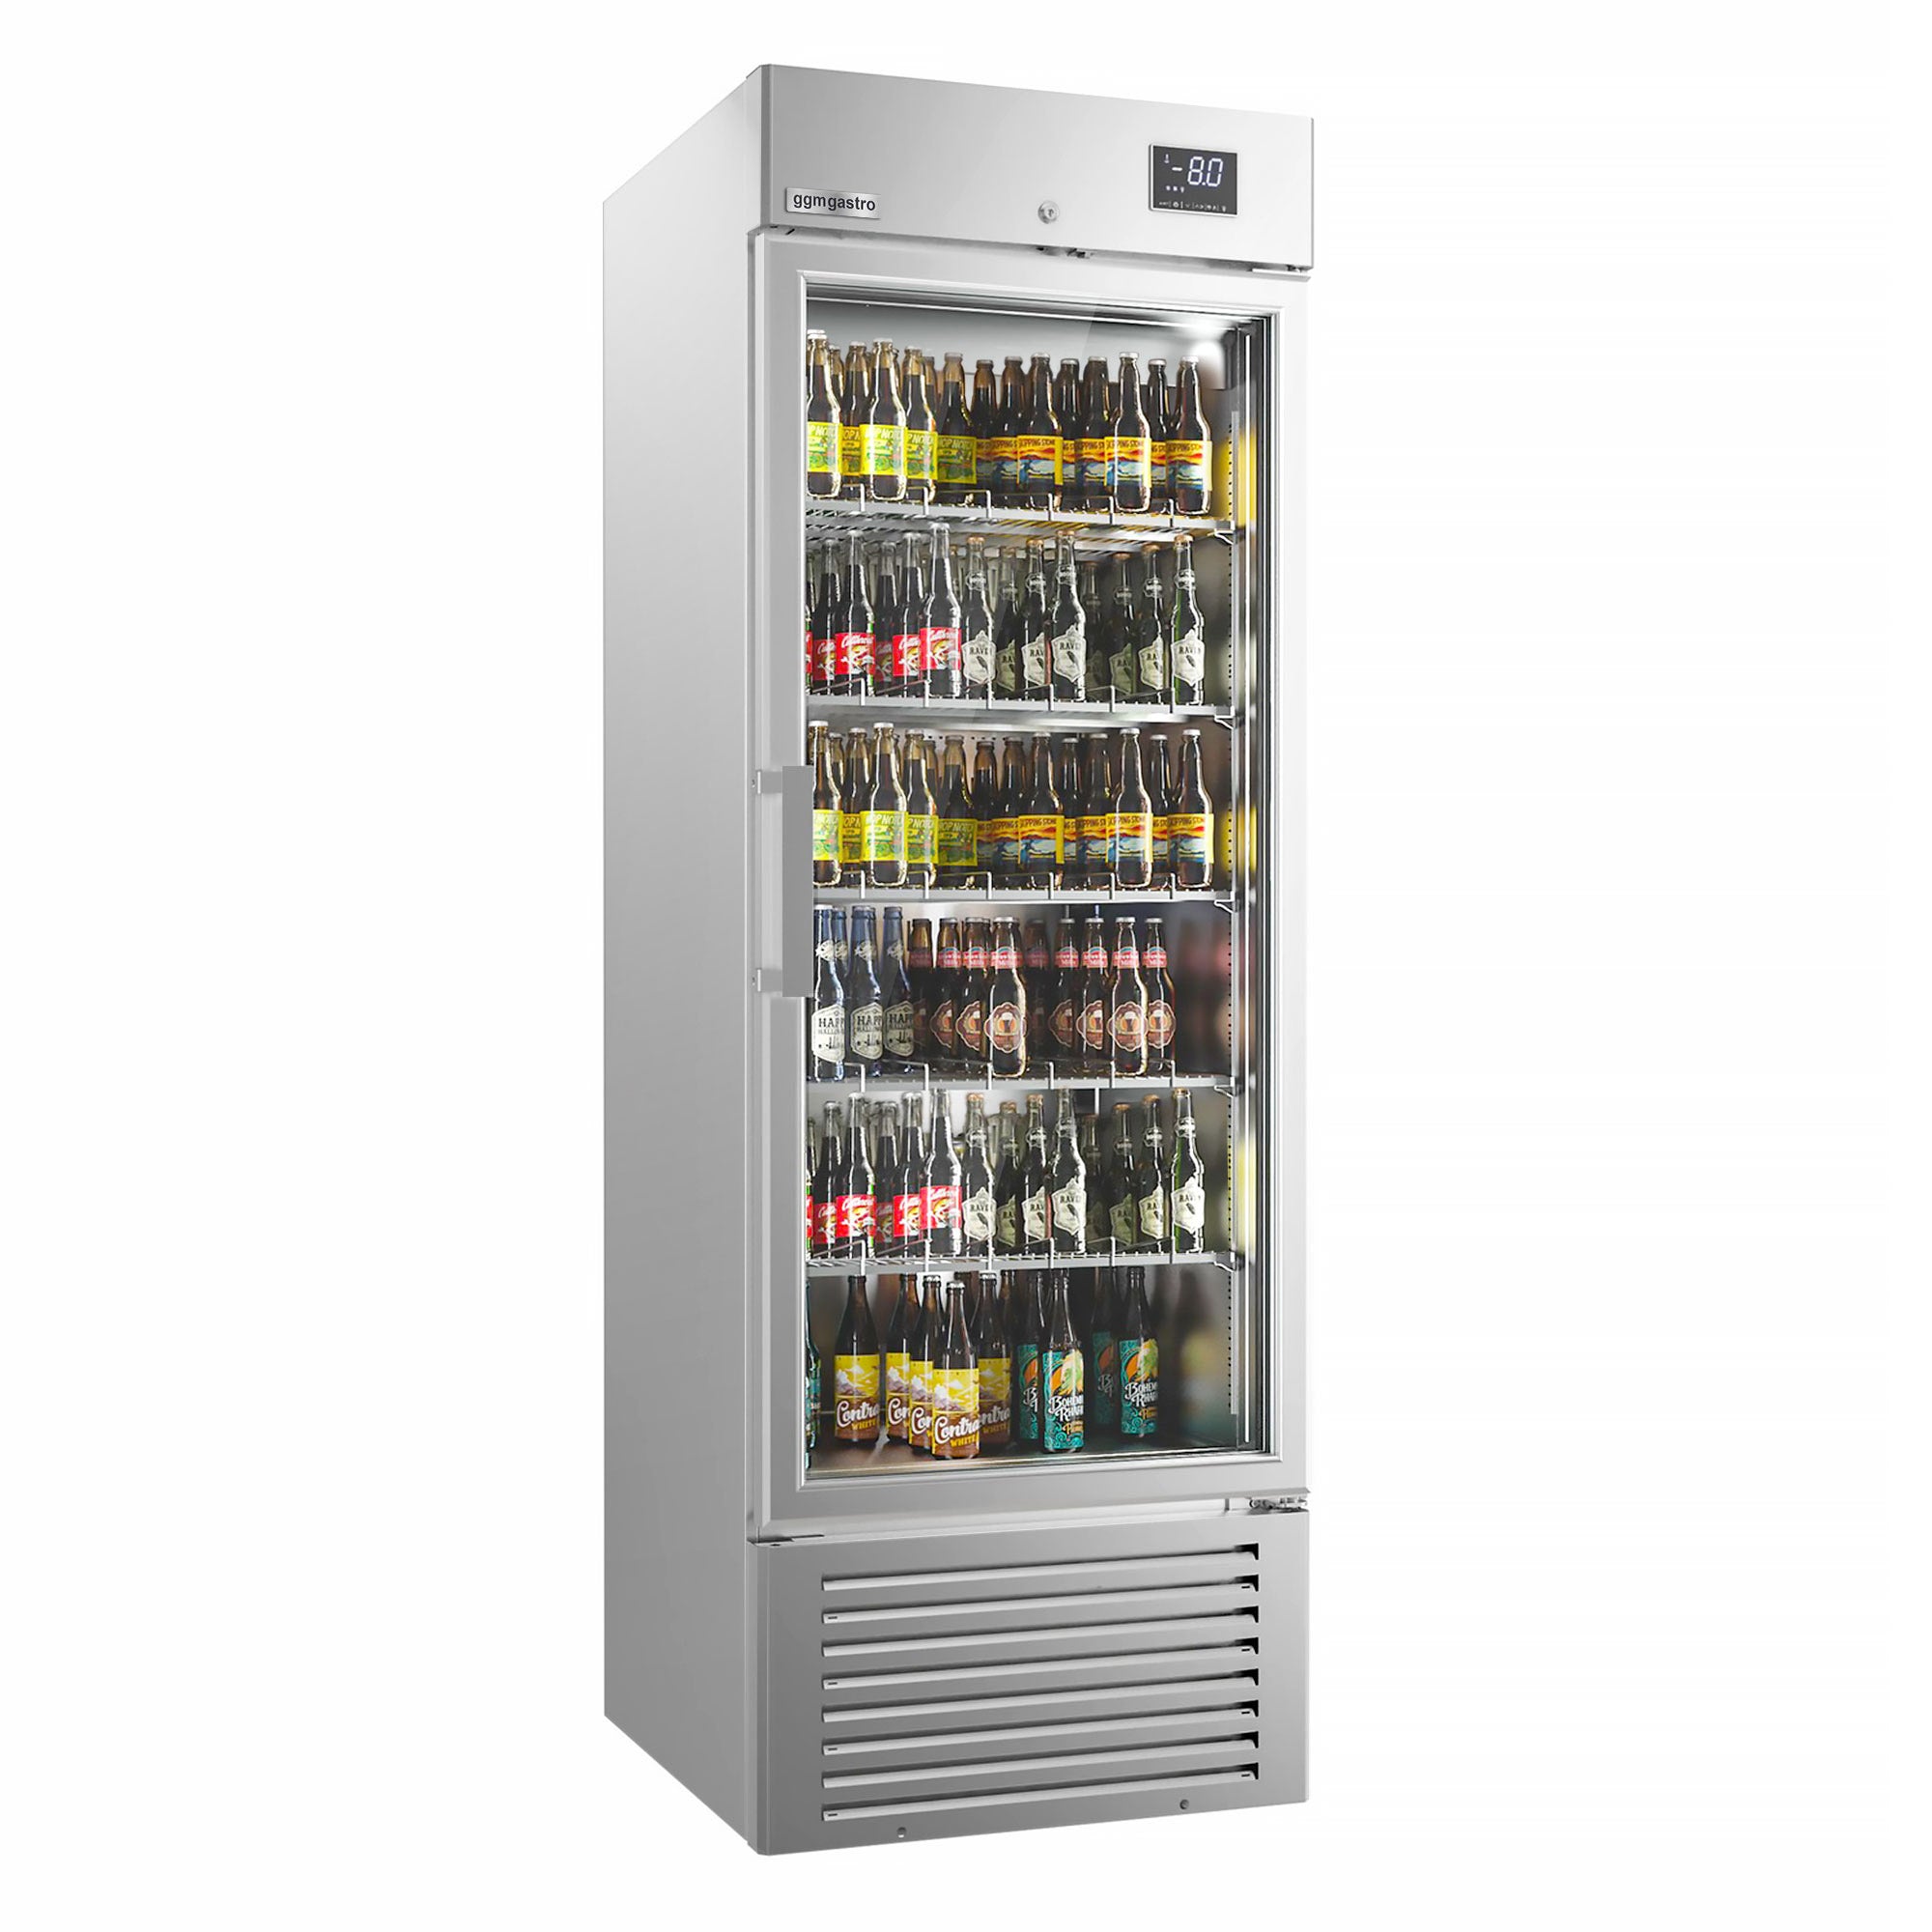 Хладилник за напитки SUPERCOOLER - сребърен - интериор от неръждаема стомана - с една стъклена врата